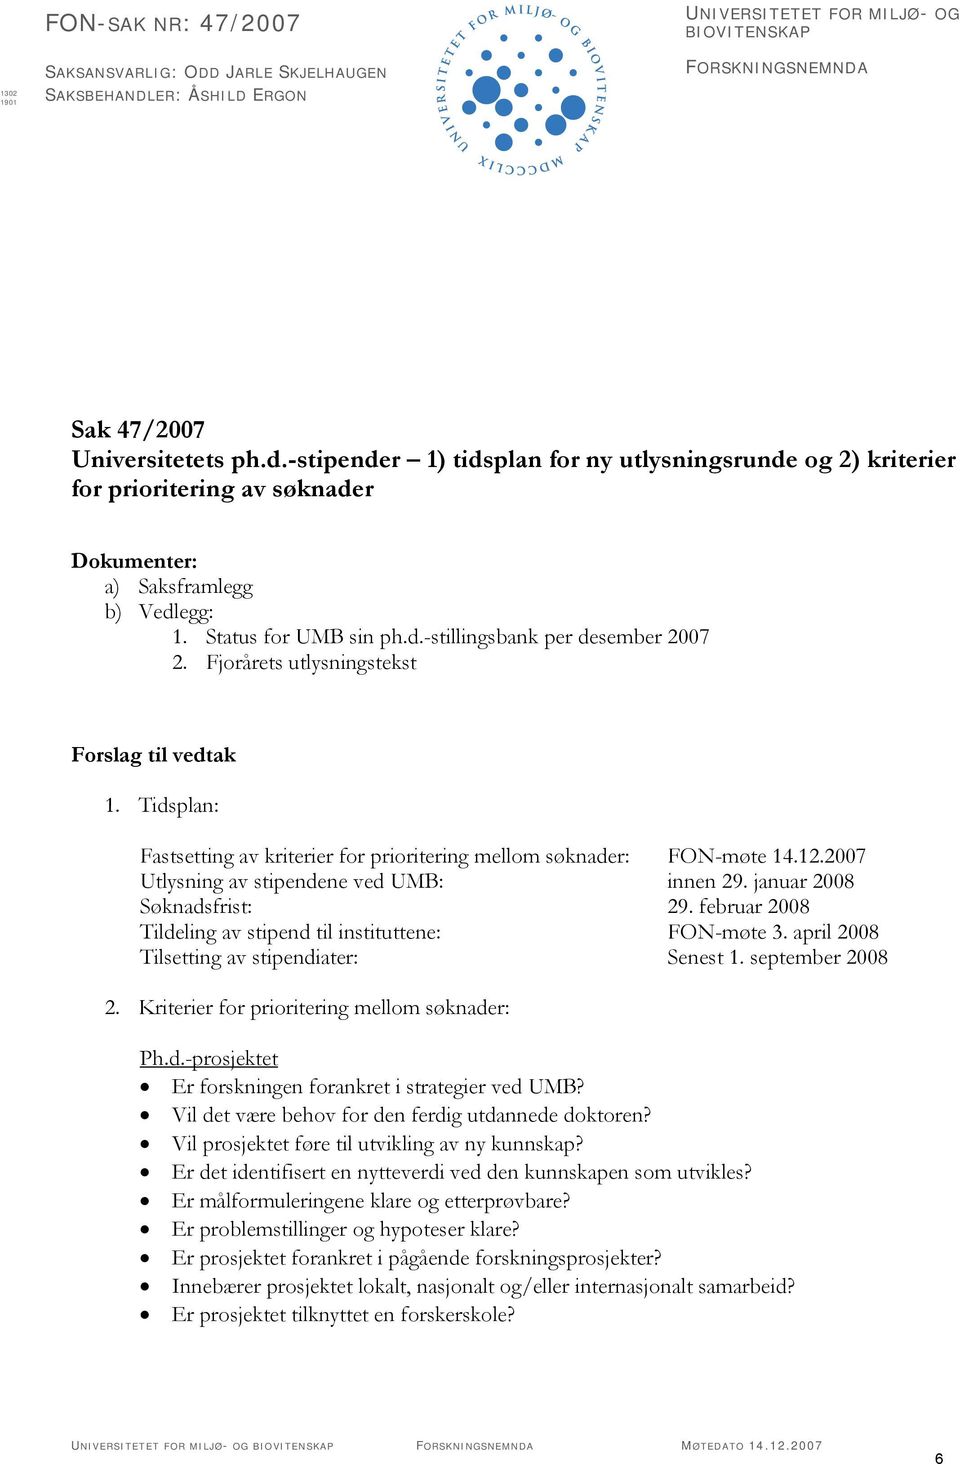 Fjorårets utlysningstekst Forslag til vedtak 1. Tidsplan: Fastsetting av kriterier for prioritering mellom søknader: FON-møte 14.12.2007 Utlysning av stipendene ved UMB: innen 29.